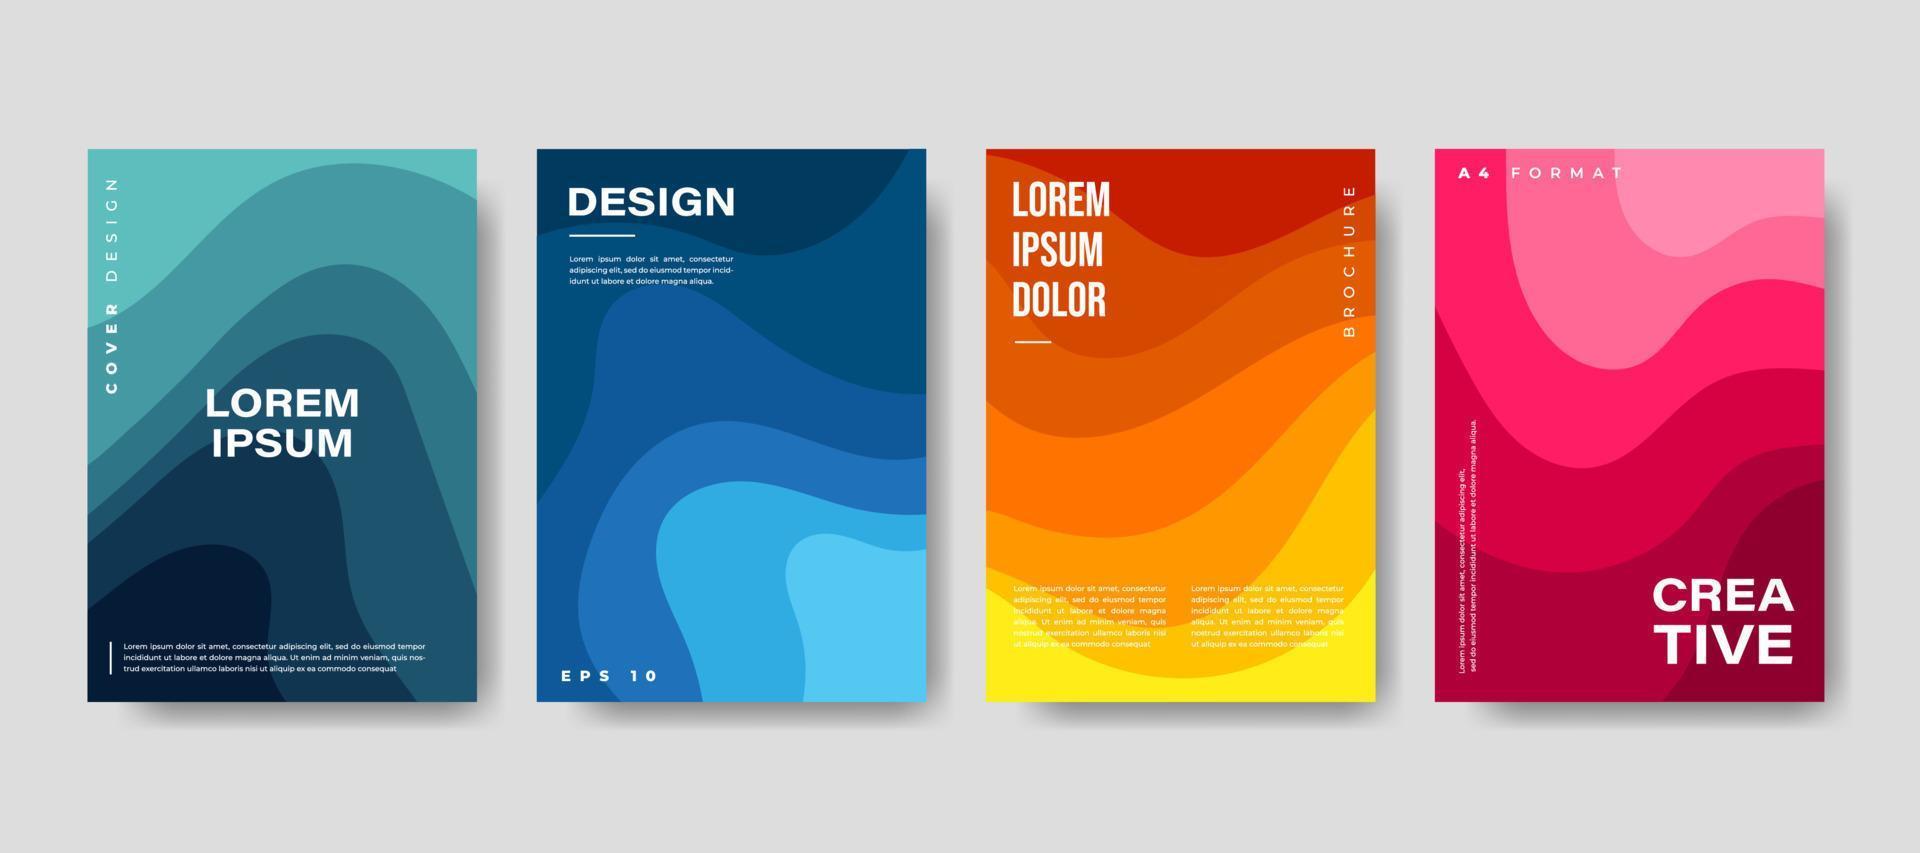 conjunto de coloridos diseños de folletos de portadas de libros. ilustración vectorial vector